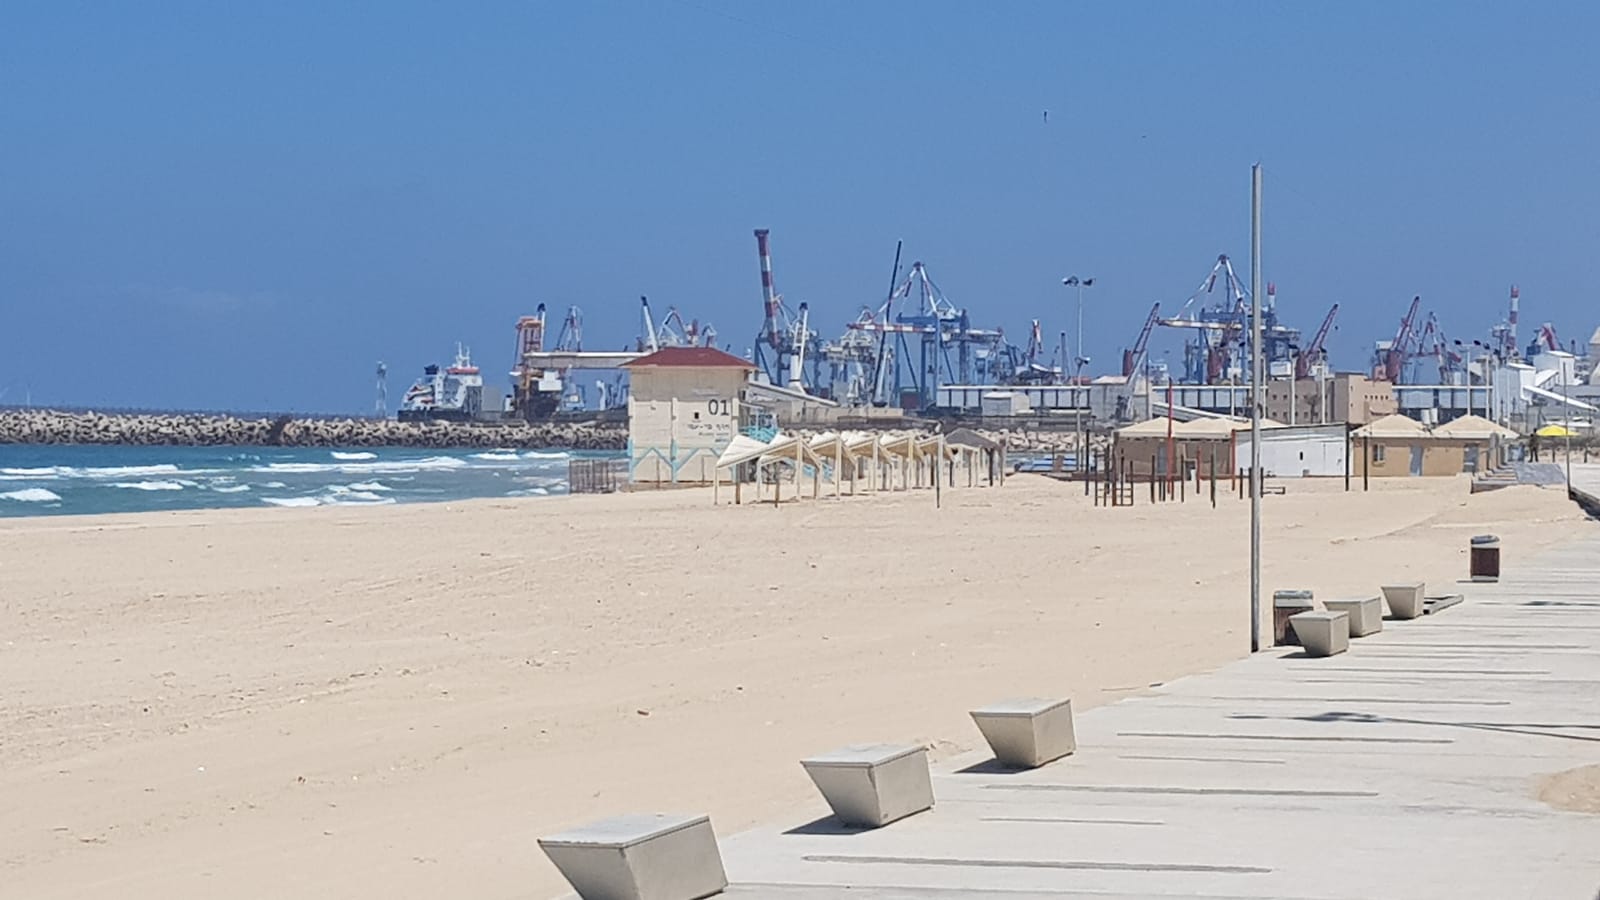 חוף אשדוד בימי הקורונה. צילום: עופר אשטוקר